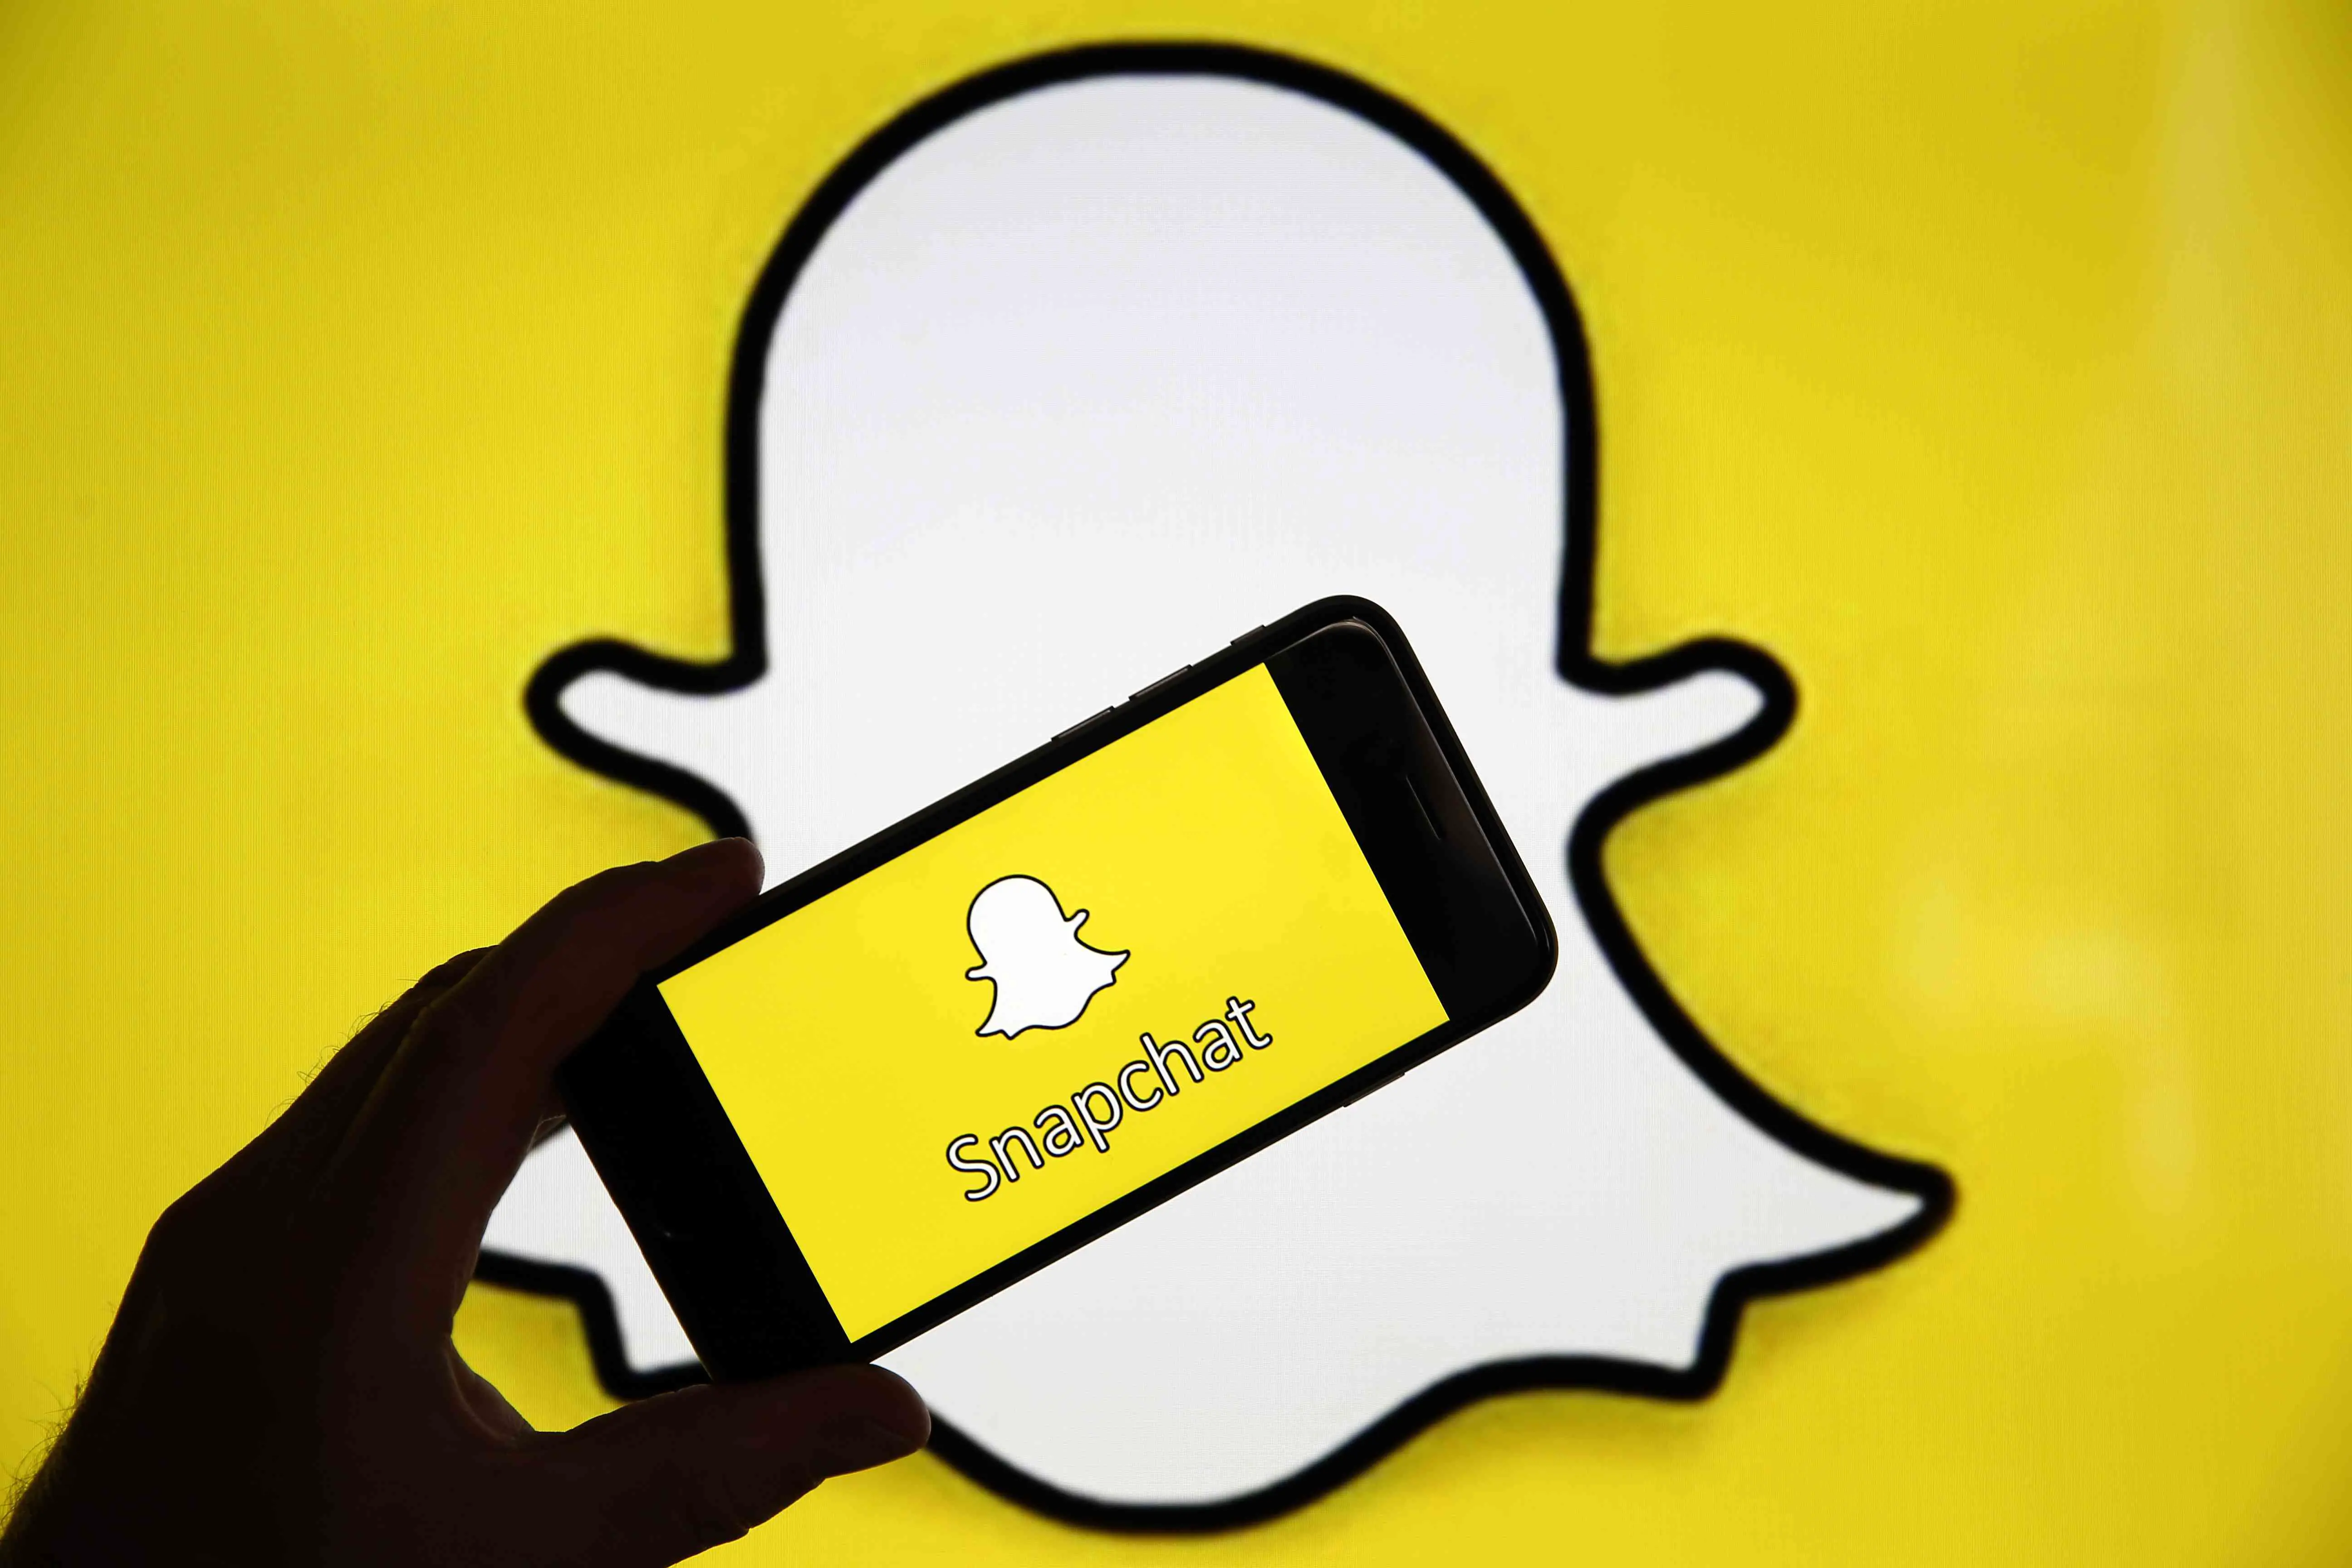 Logotipo do Snapchat atrás da mão segurando o Snapchat em um telefone